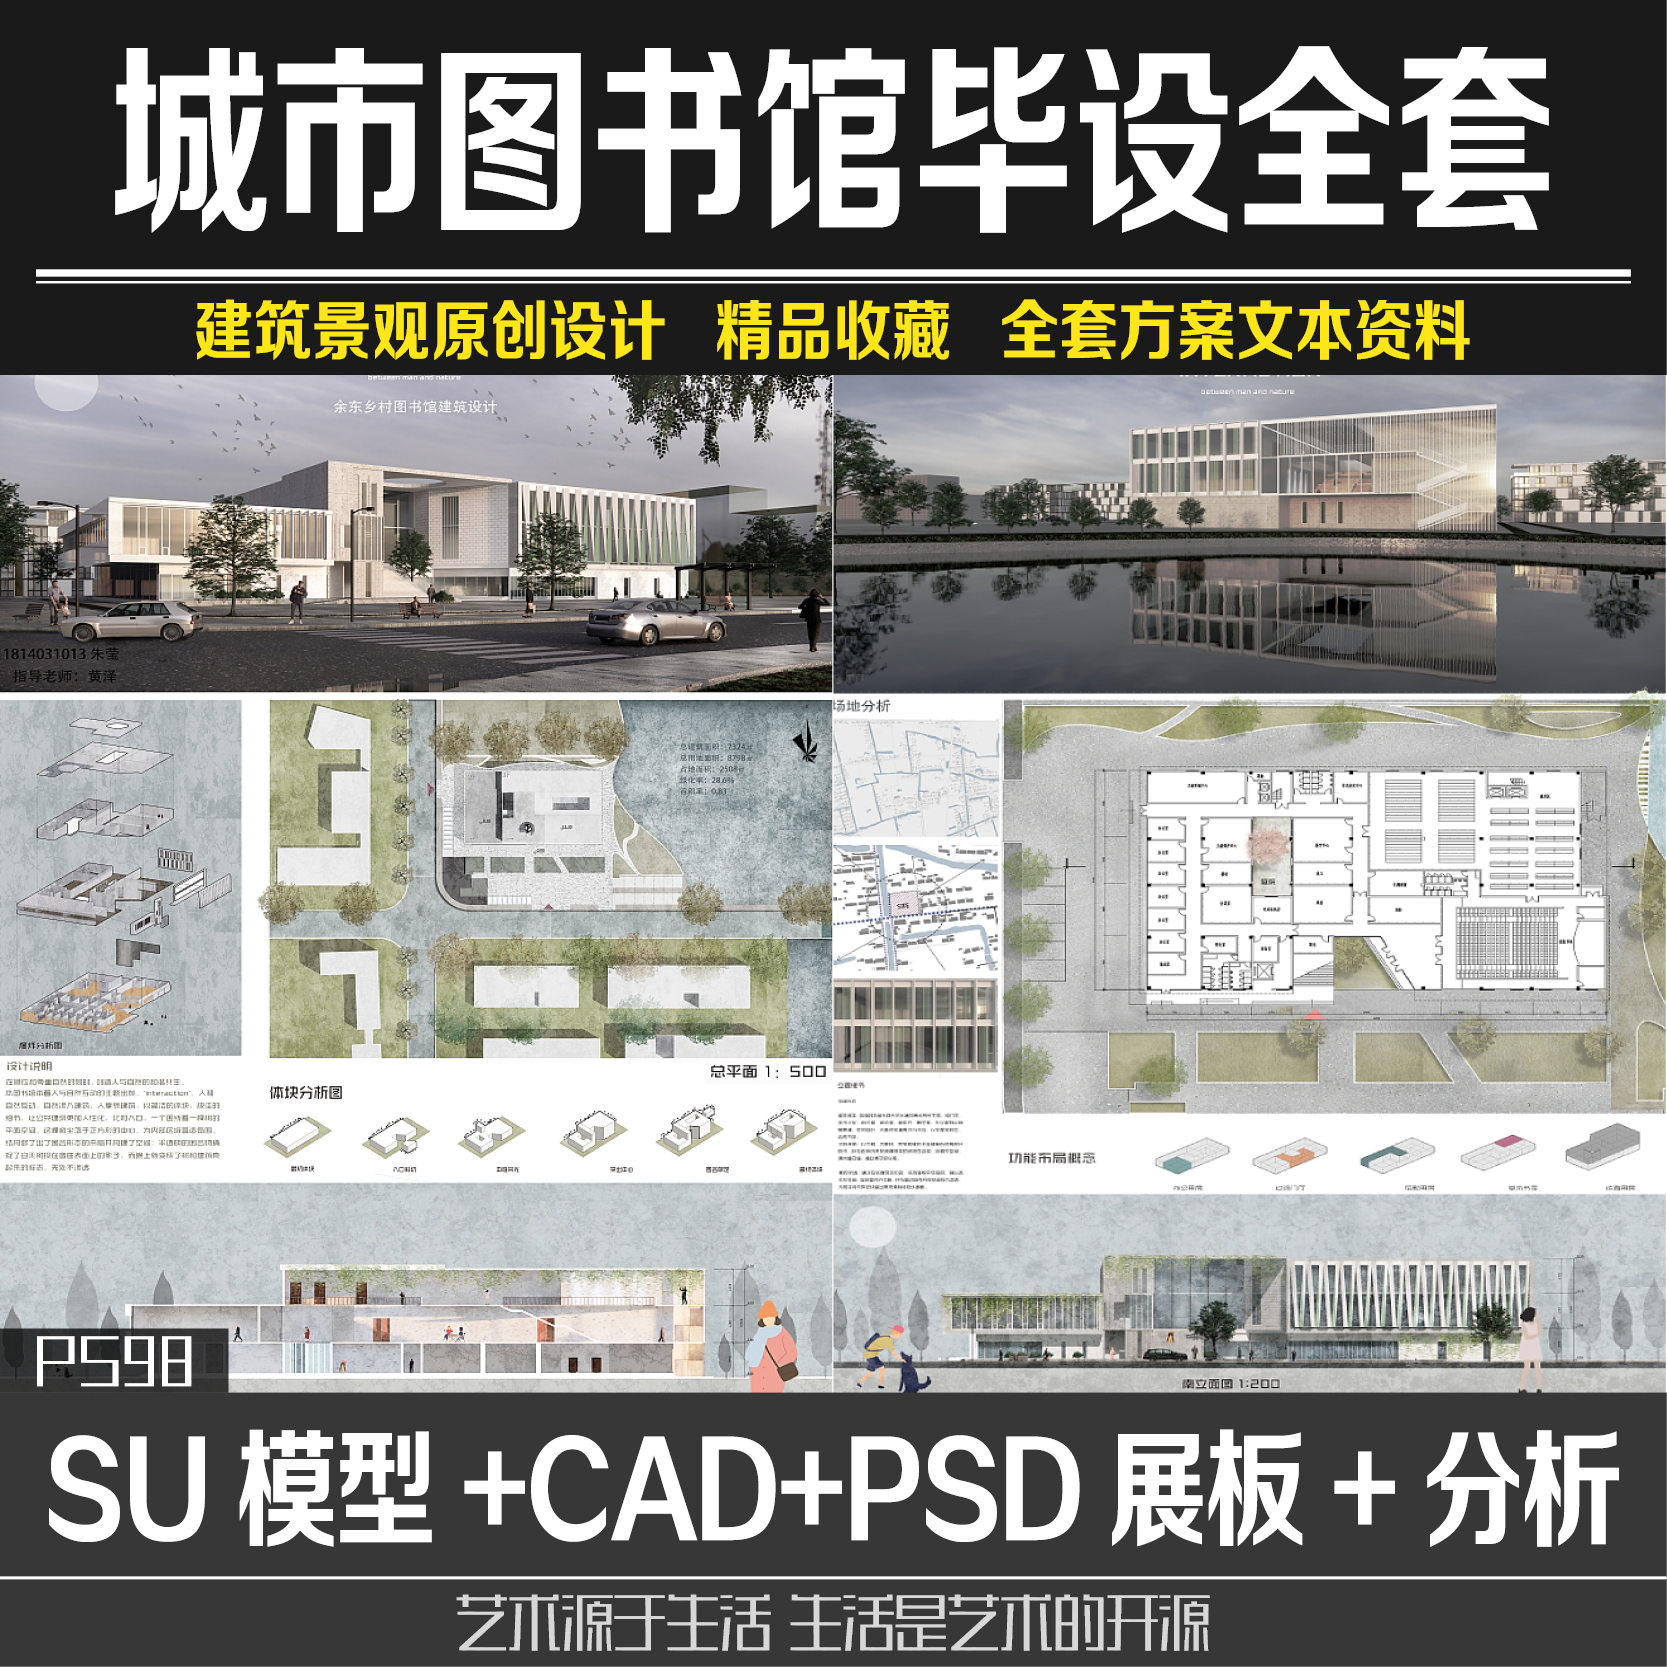 城市图书馆展览馆设计CAD平面SU模型psd展板效果图全套毕设方案